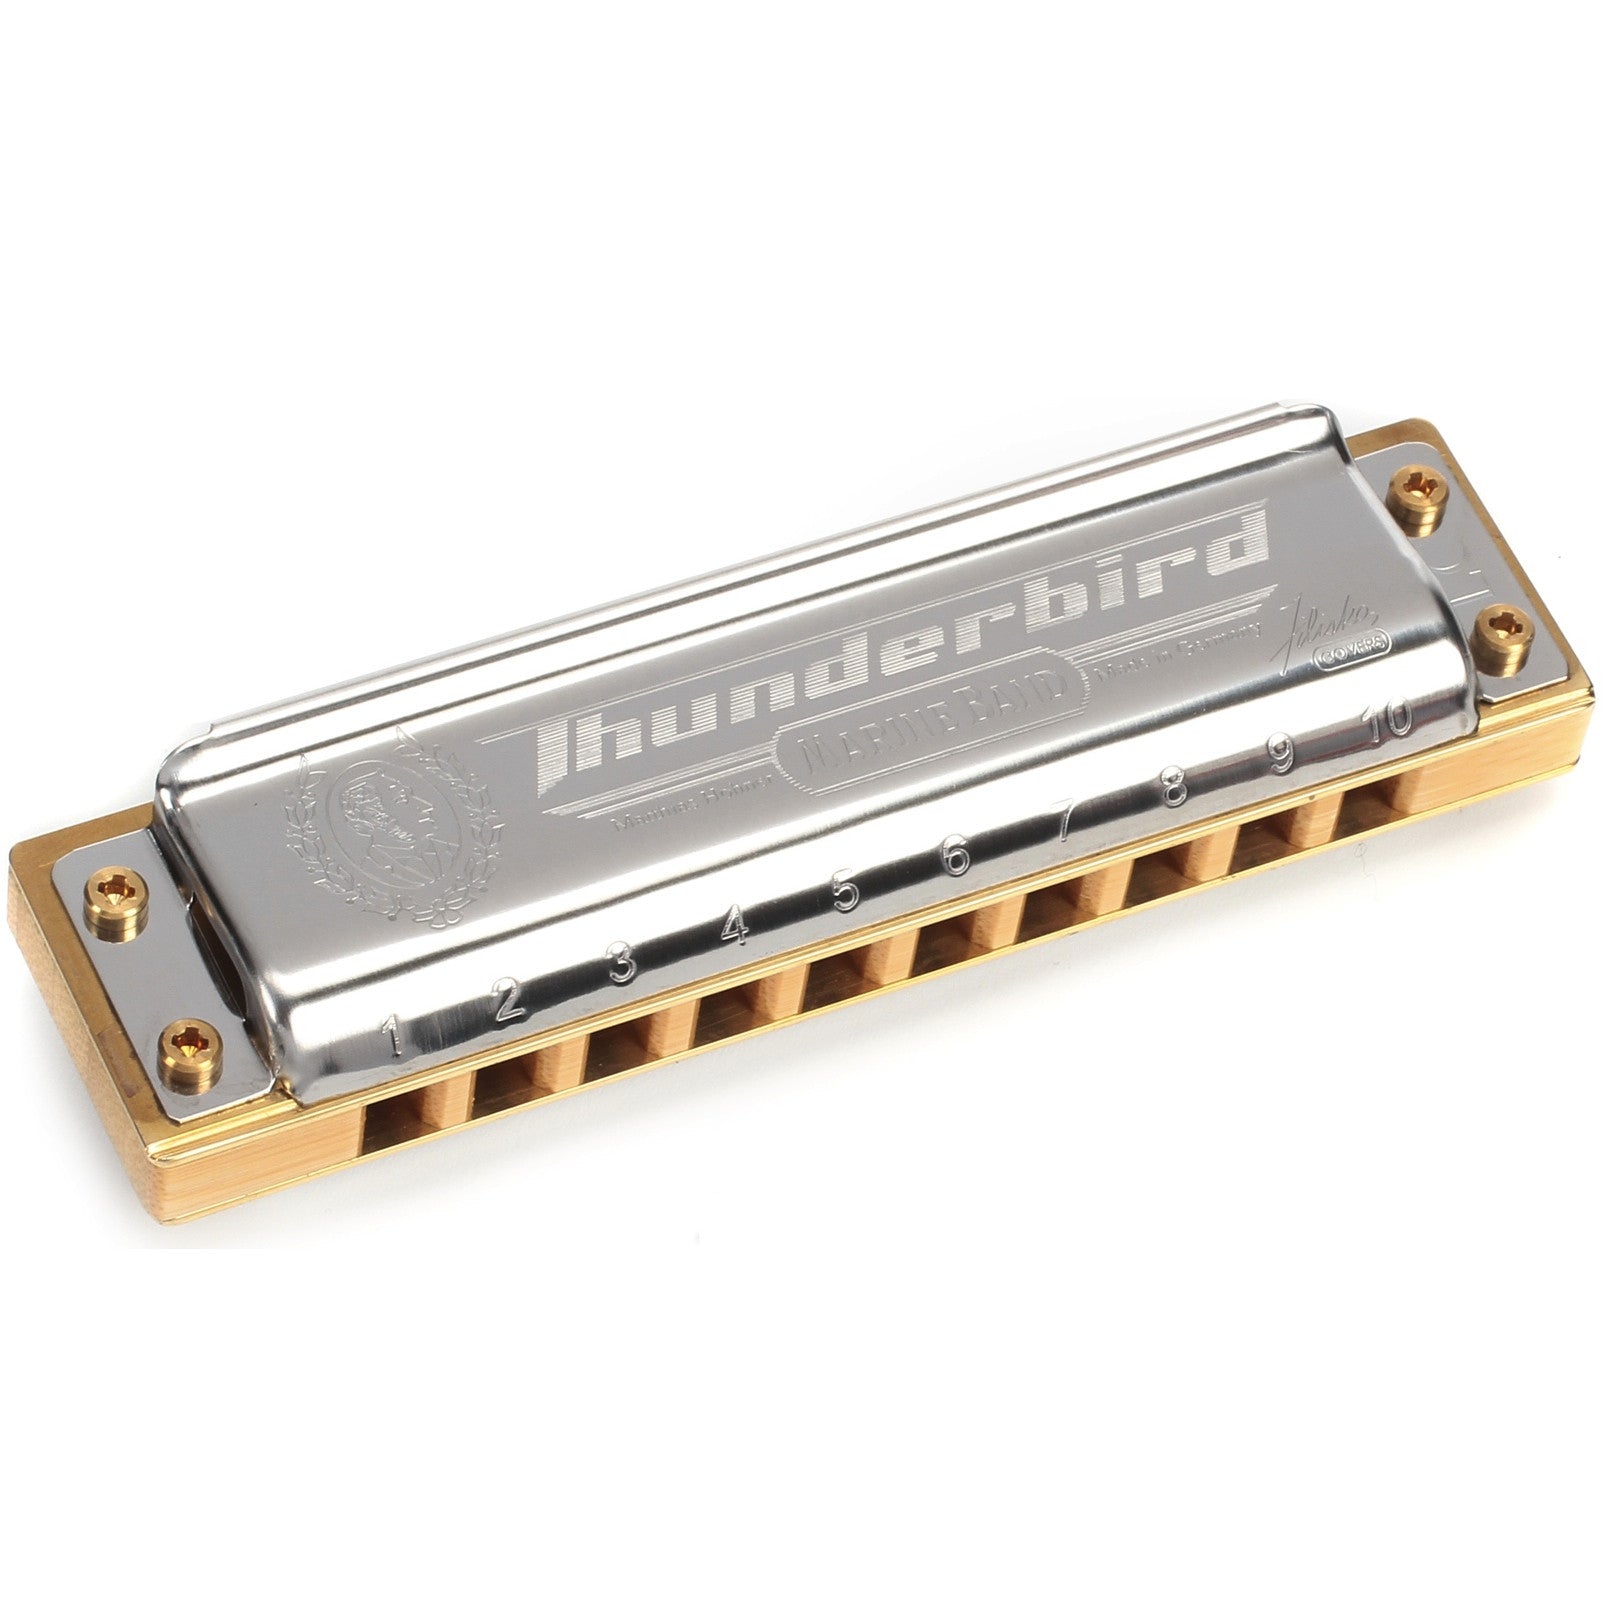 Hohner Thunderbird Marine Band Key of Low C